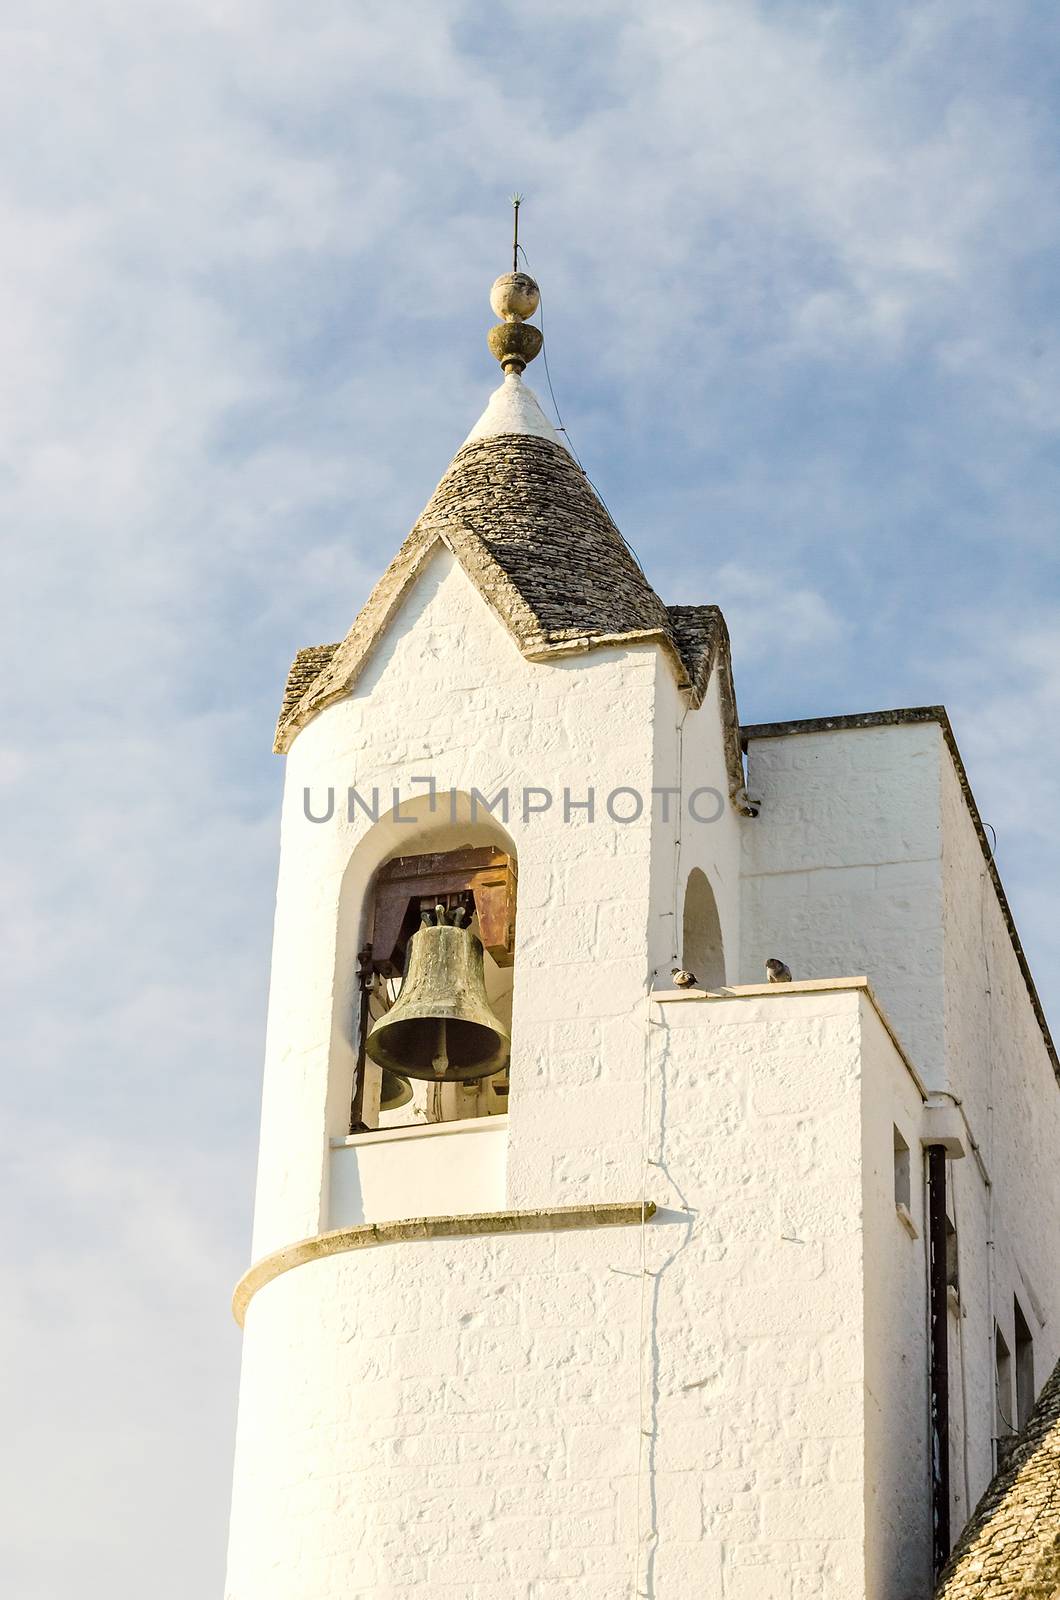 Belltower of the Trullo church in Alberobello, Italy by marcorubino